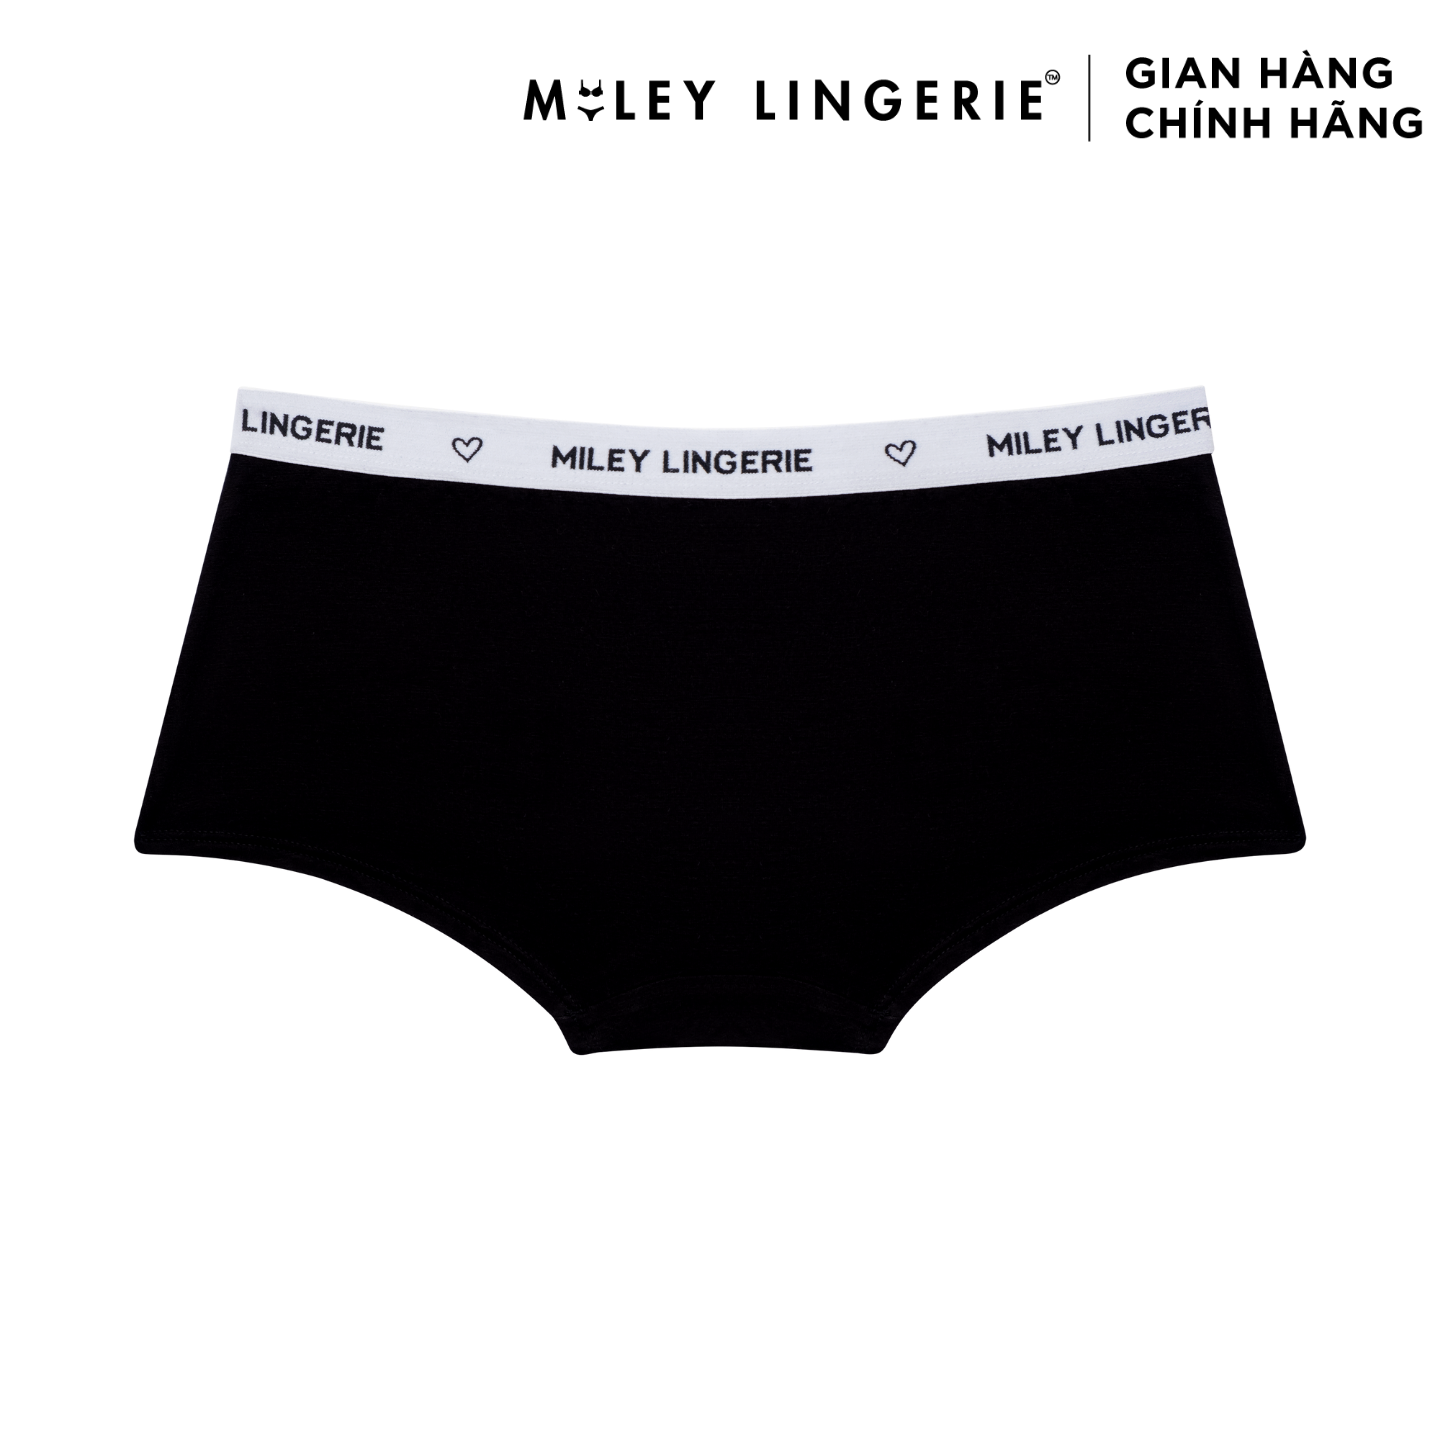 Combo 2 Quần Boy Short Sợi Vải Thiên Nhiên Miley Lingerie - Màu ngẫu nhiên